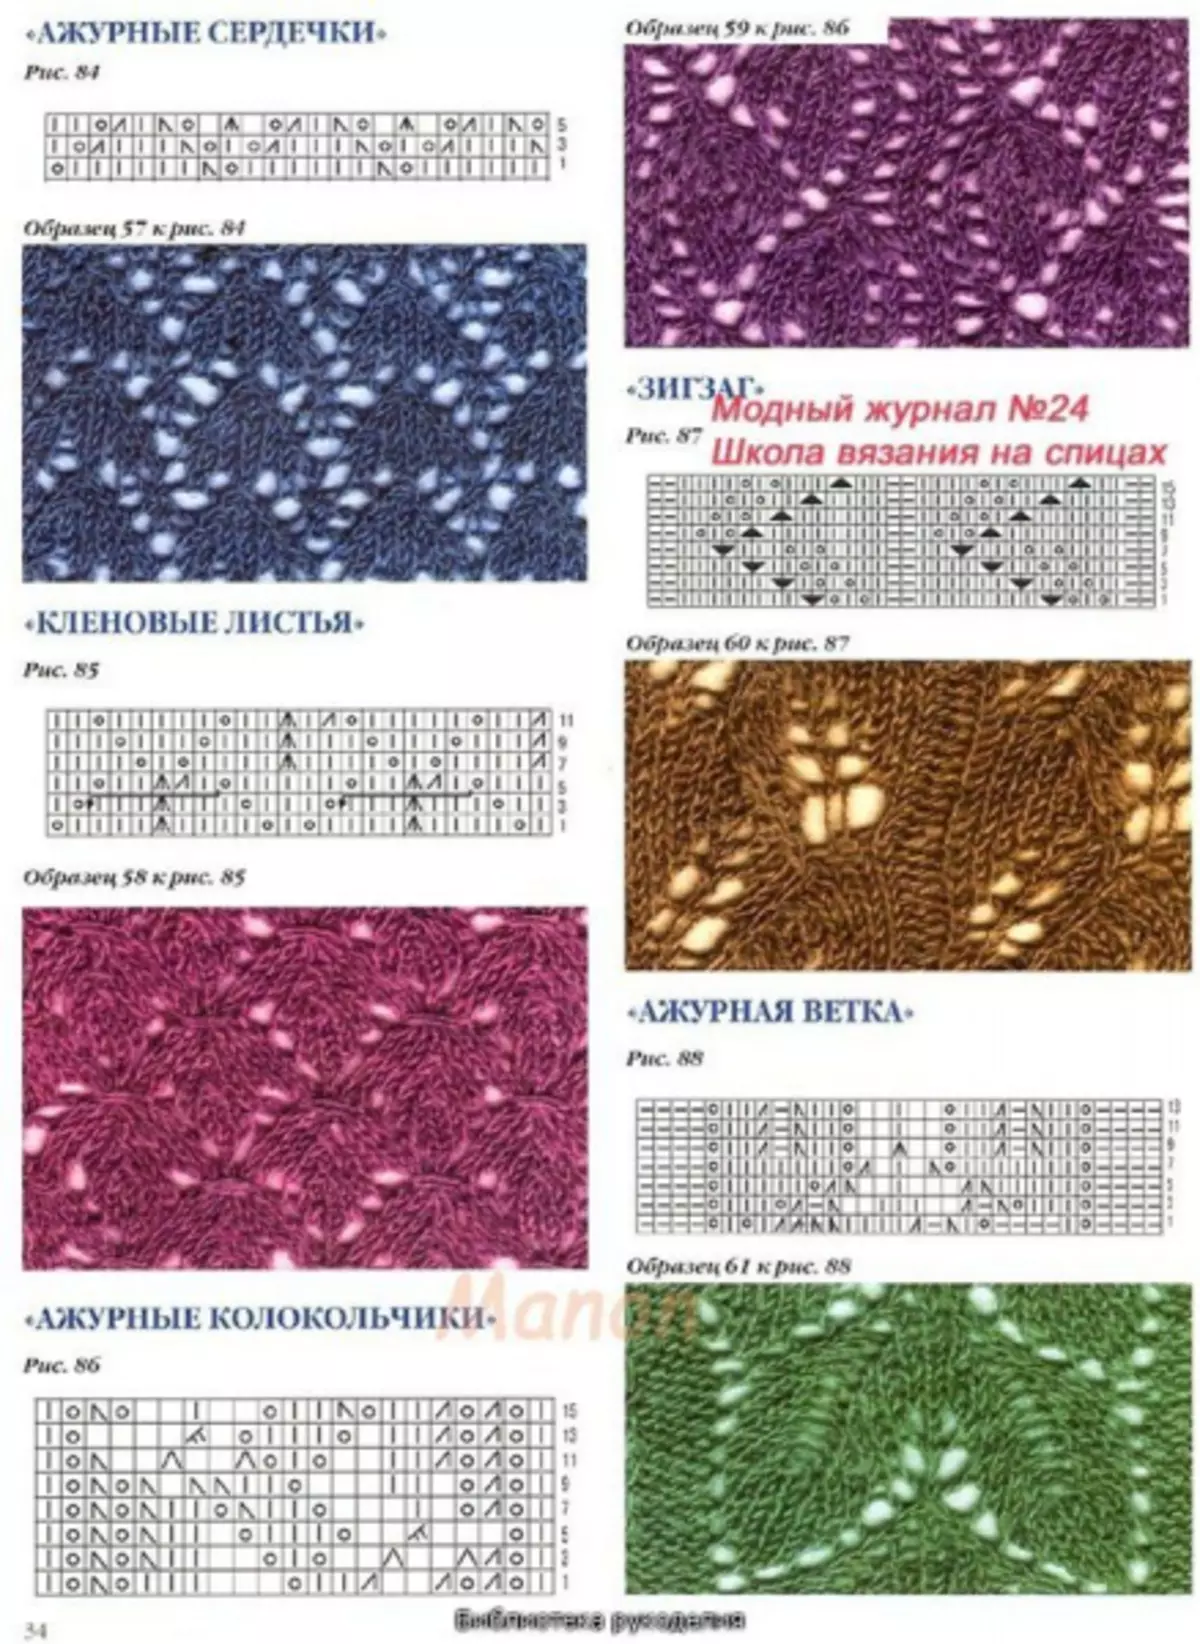 Ftuħ tal-labar tan-knitting: dijagrammi u deskrizzjoni għal palatine bir-ritratti u l-vidjow